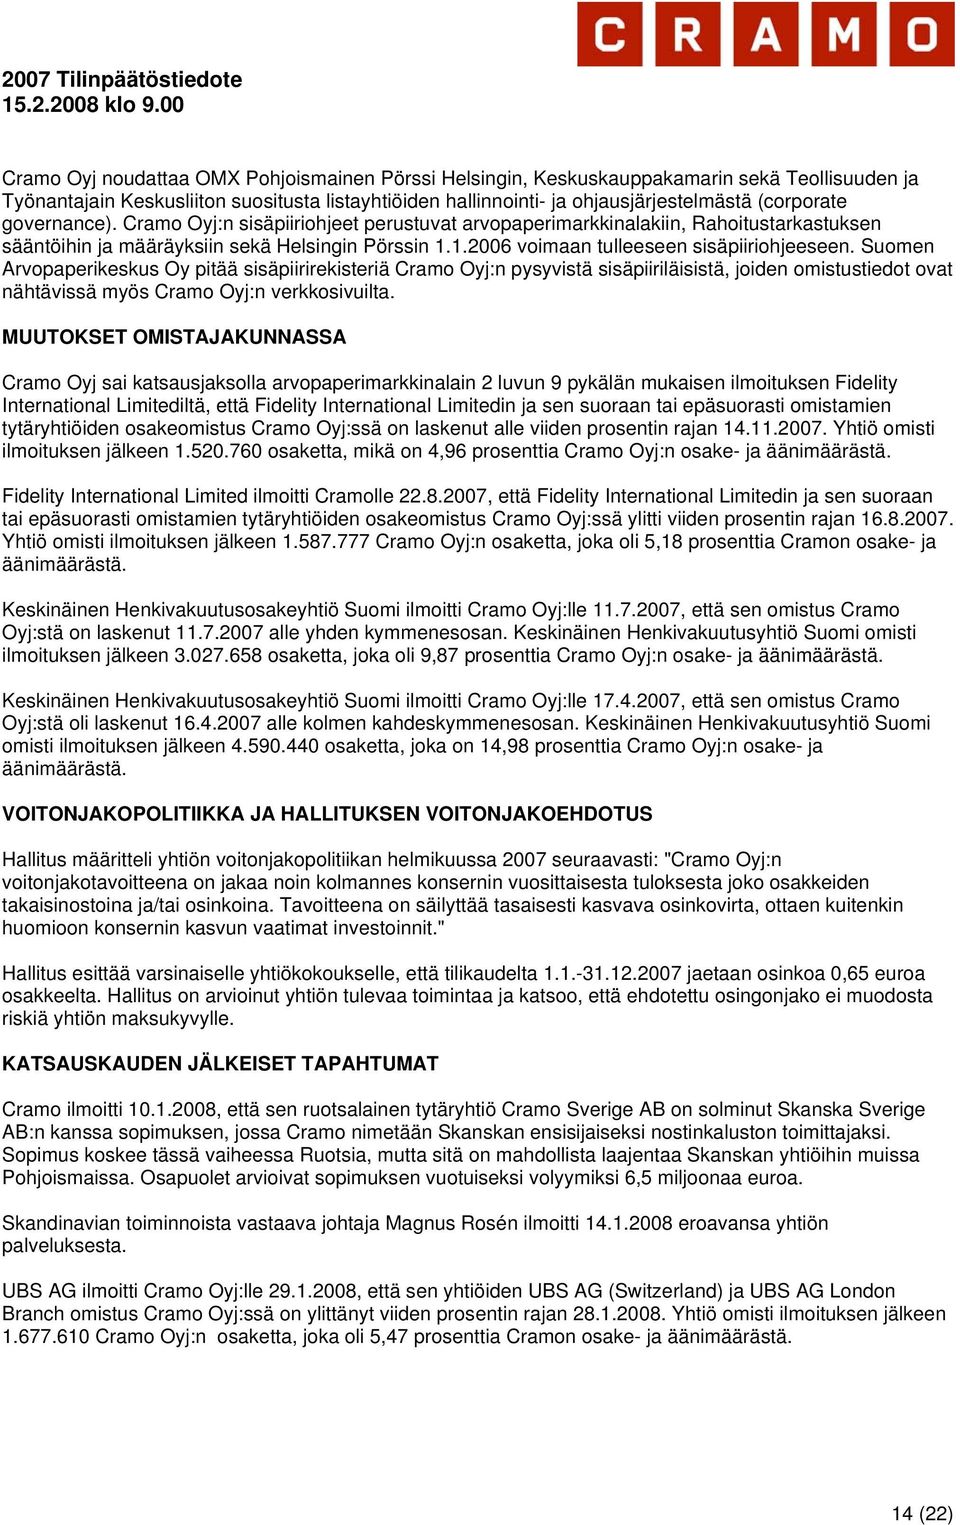 Suomen Arvopaperikeskus Oy pitää sisäpiirirekisteriä Cramo Oyj:n pysyvistä sisäpiiriläisistä, joiden omistustiedot ovat nähtävissä myös Cramo Oyj:n verkkosivuilta.